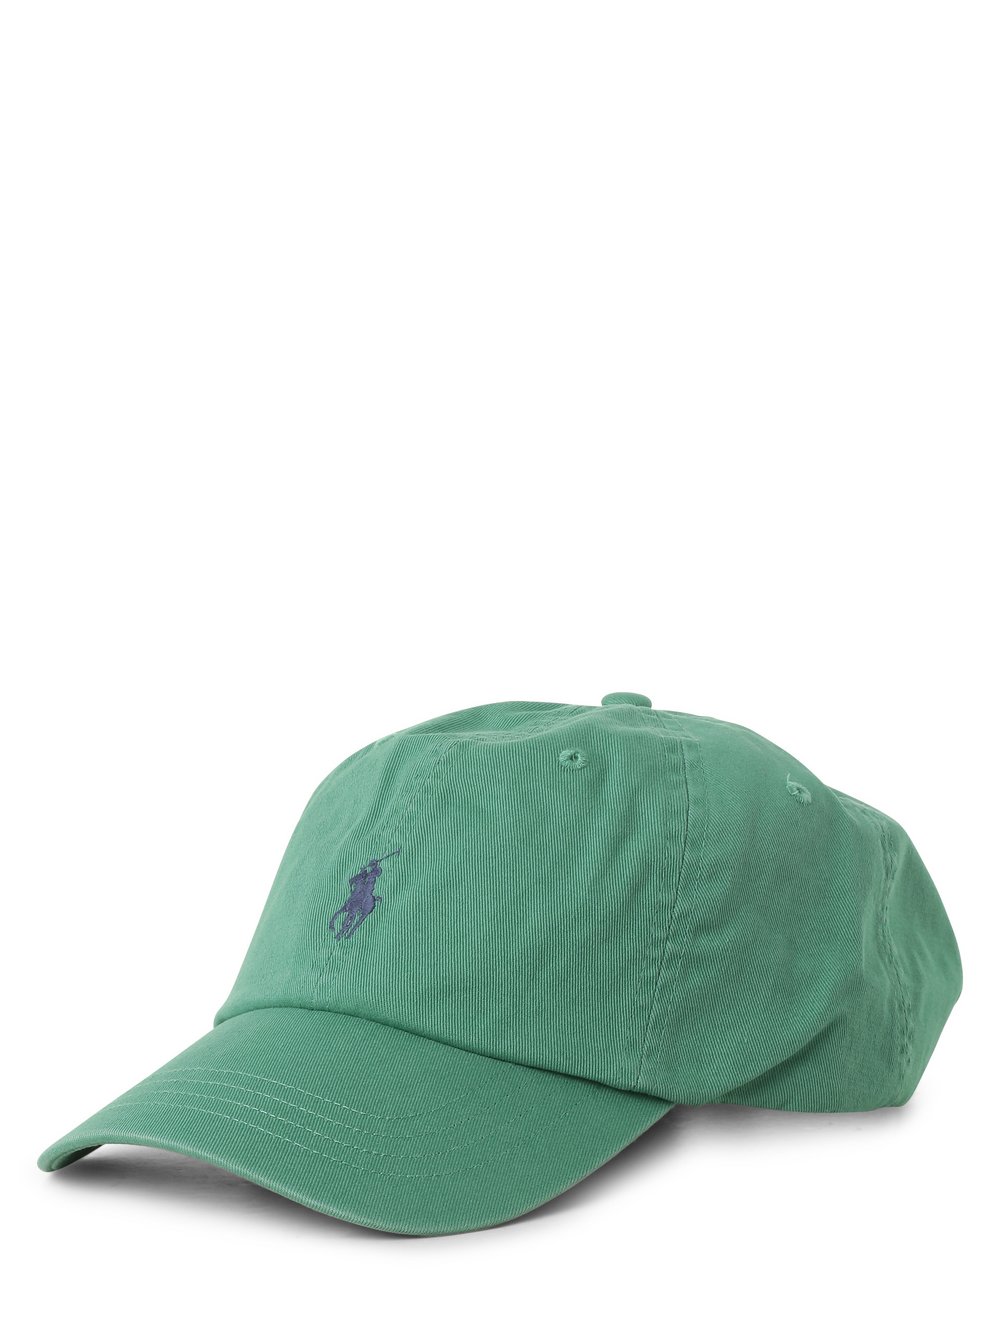 Polo Ralph Lauren - Męska czapka z daszkiem, zielony